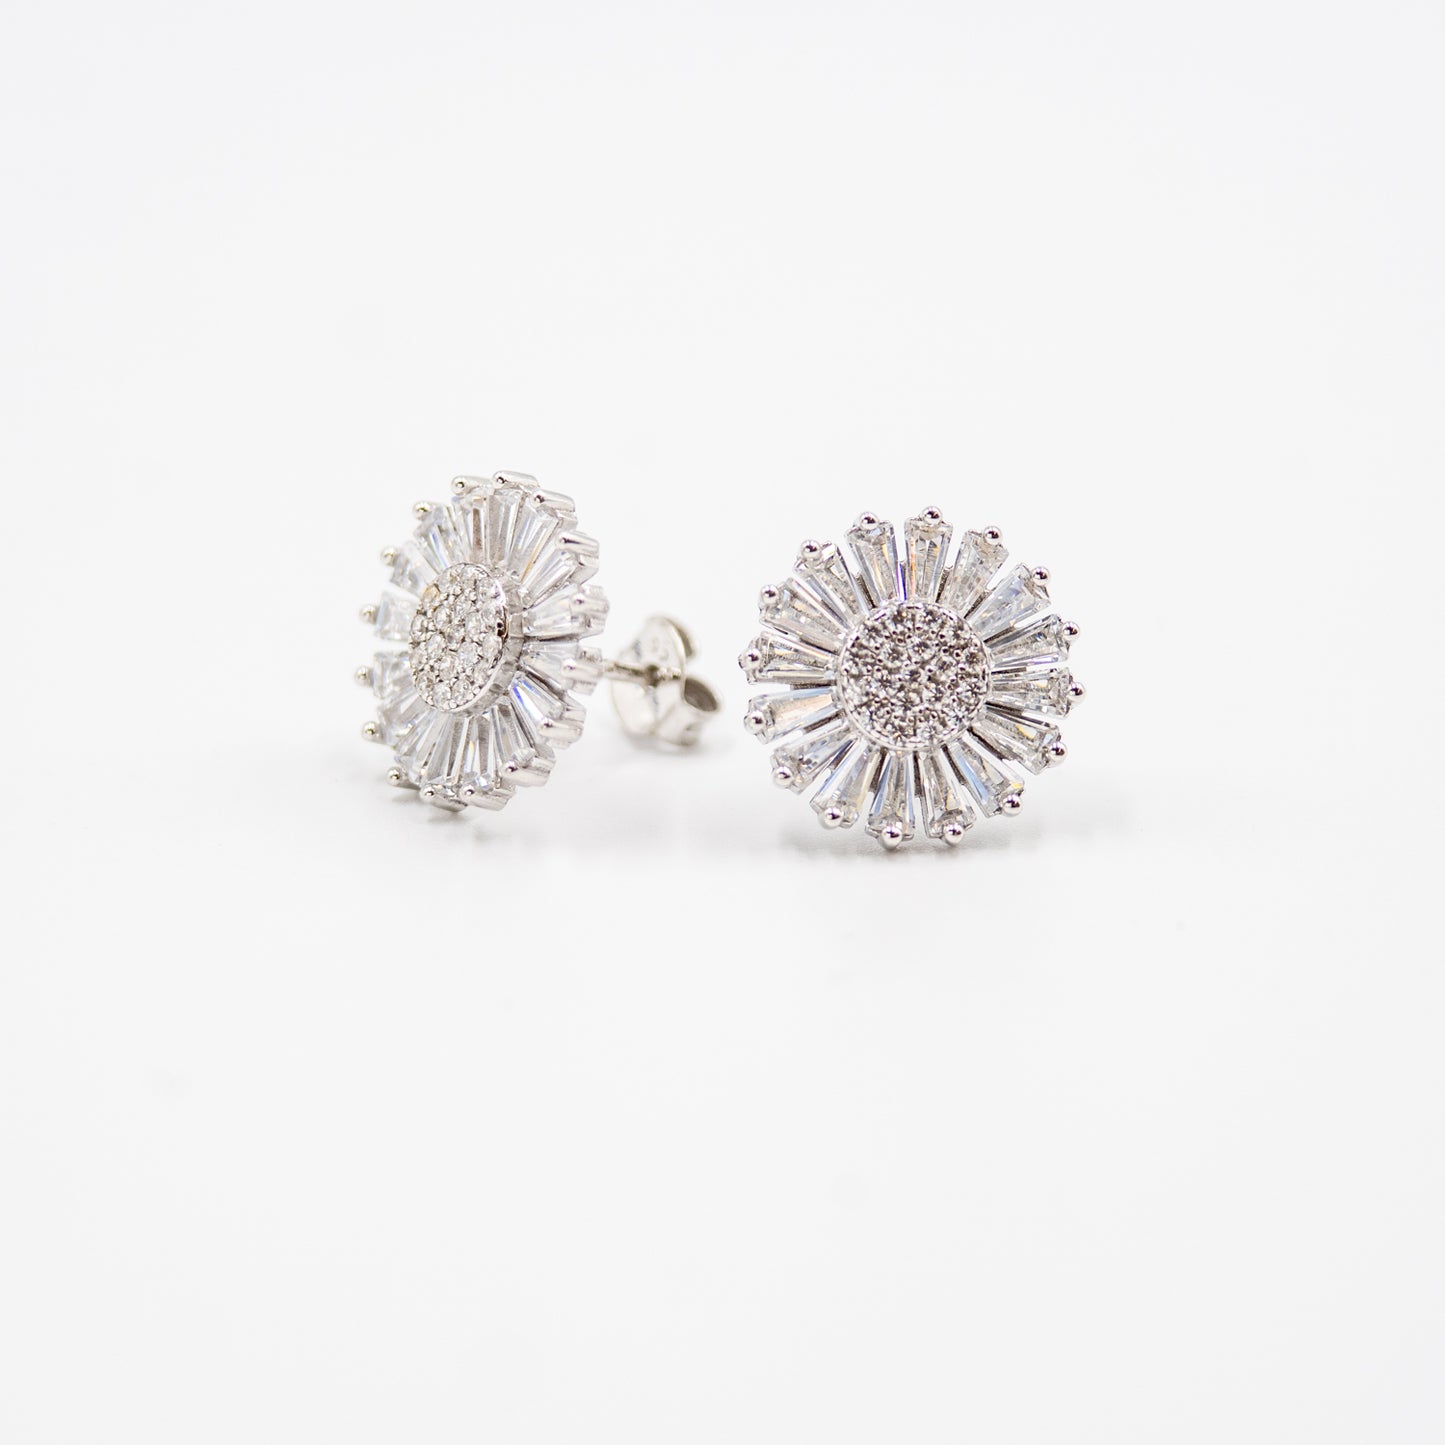 DK-925-178 sterling silver earrings